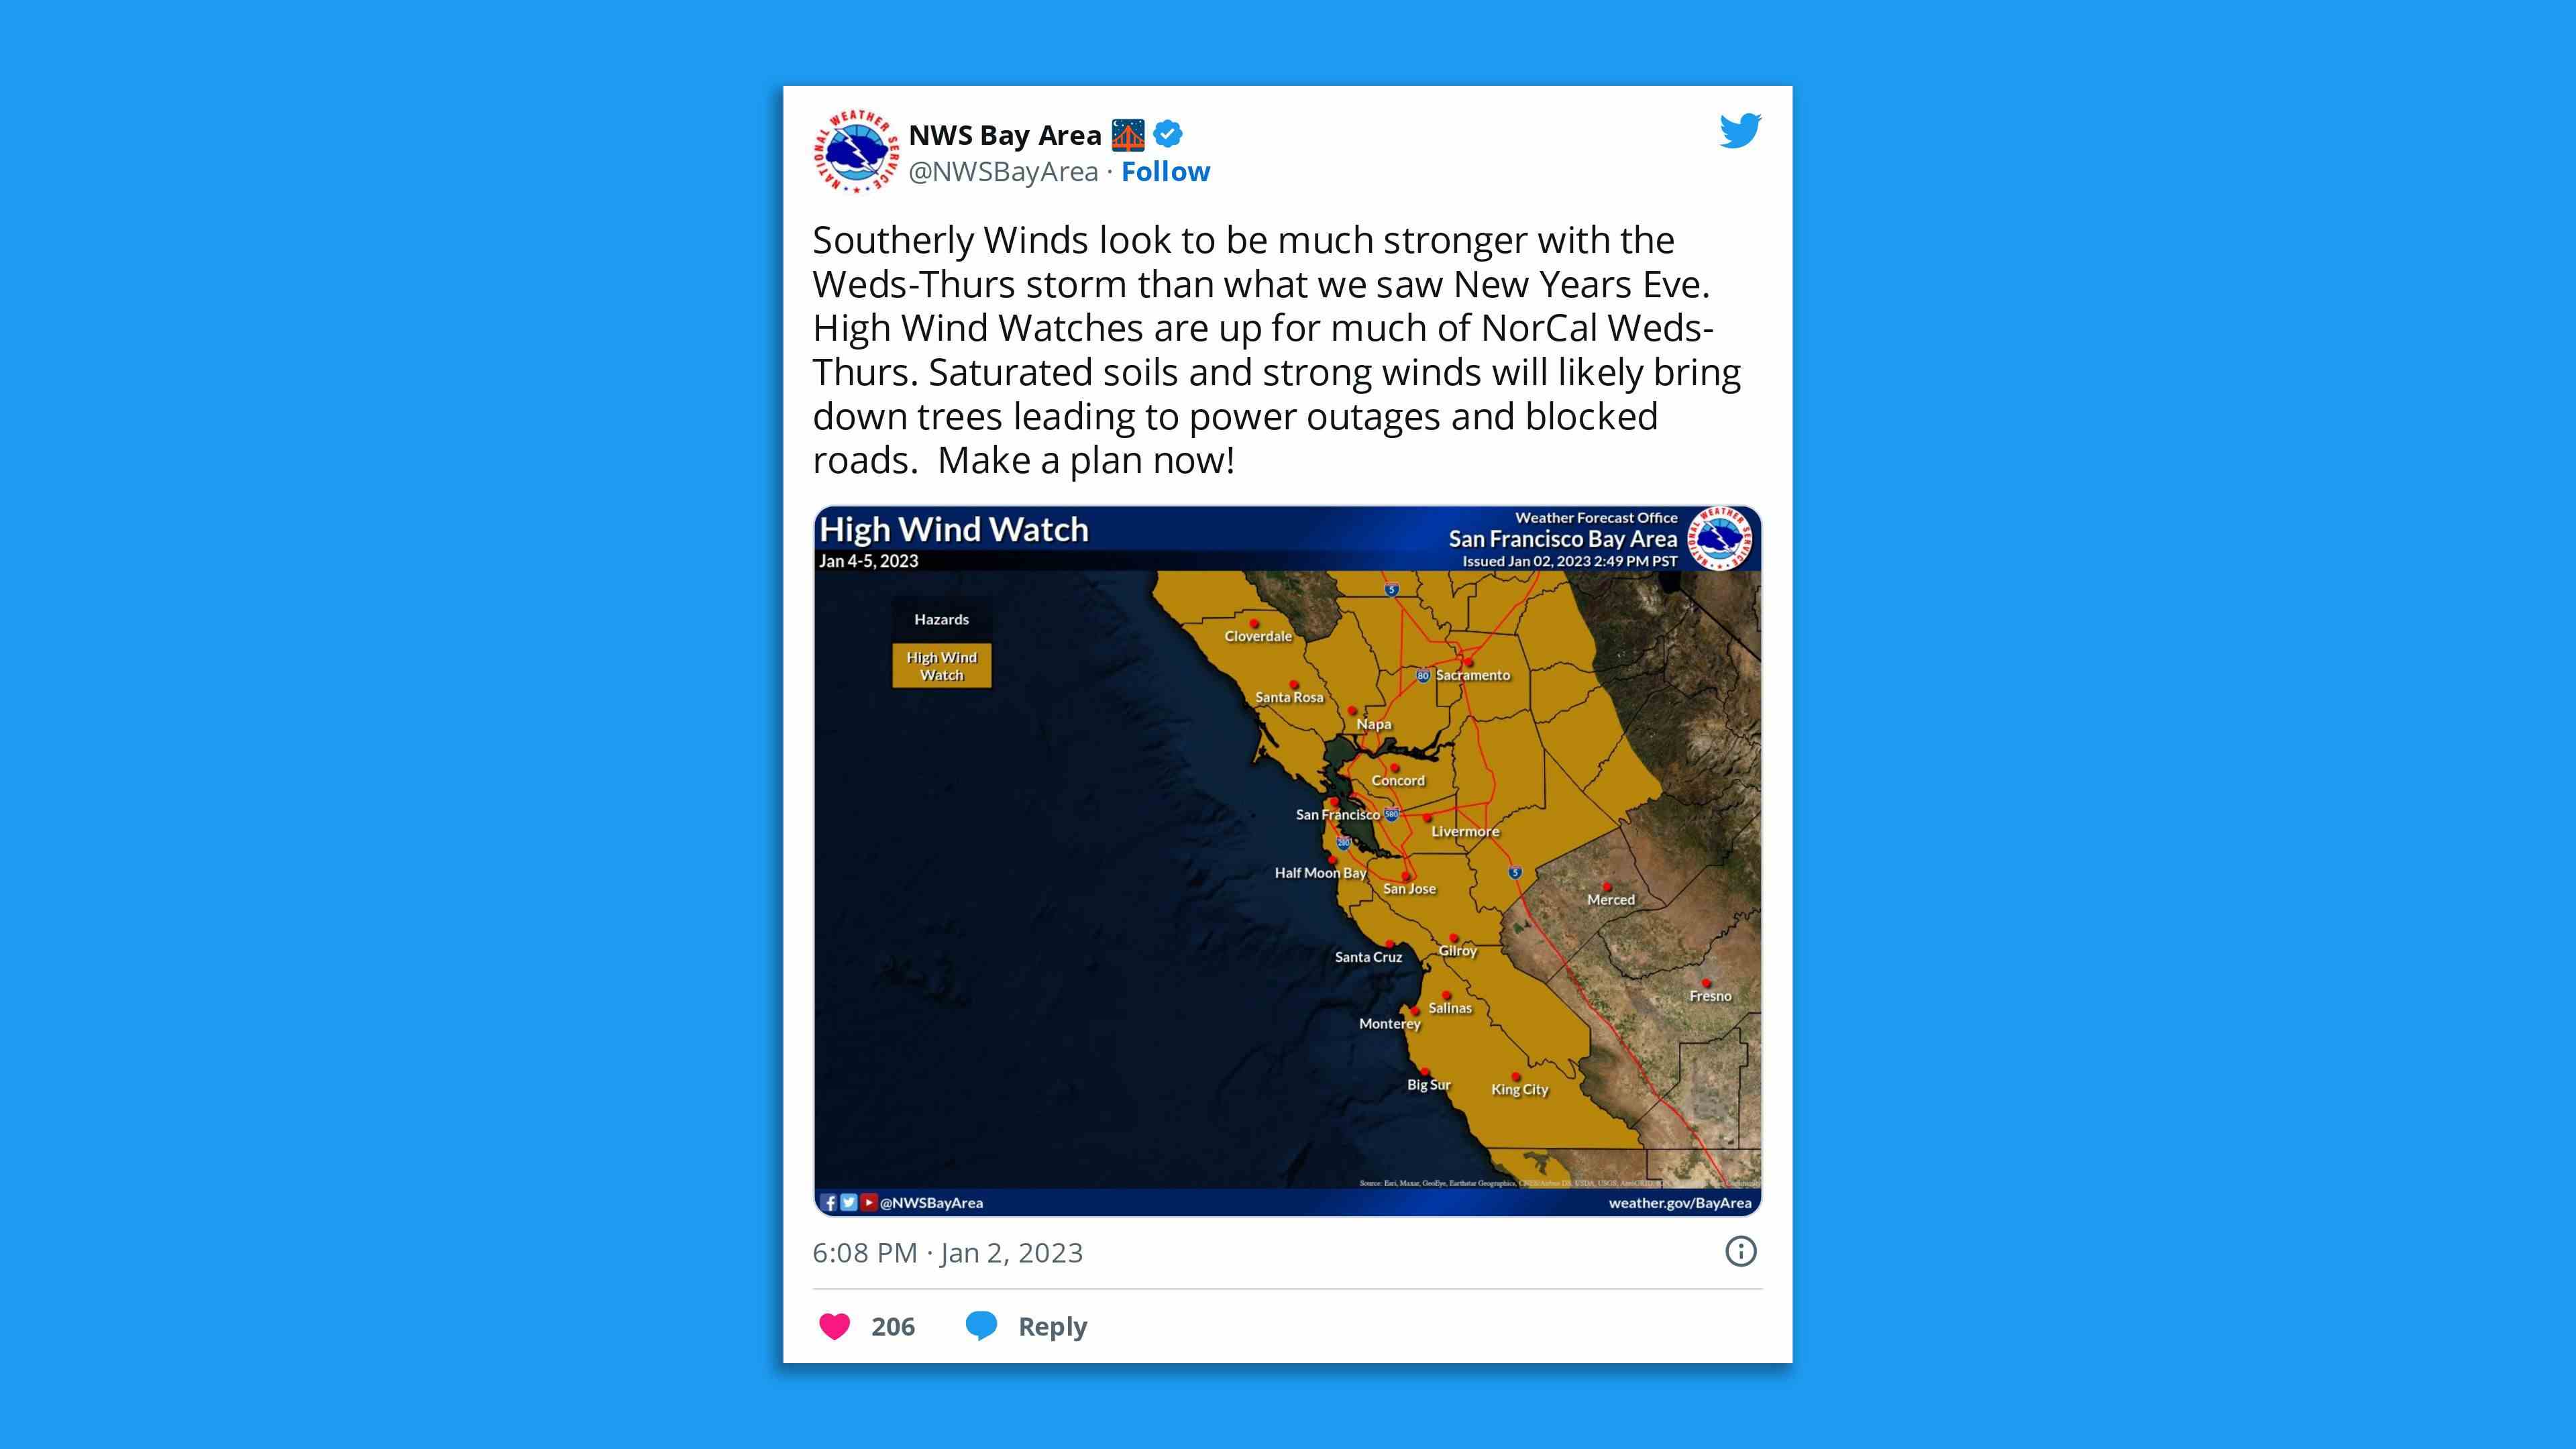 Ein Screenshot eines NWS Bay Area-Tweets, der vor starken Winden in der gesamten Region aufgrund des Sturms warnt.